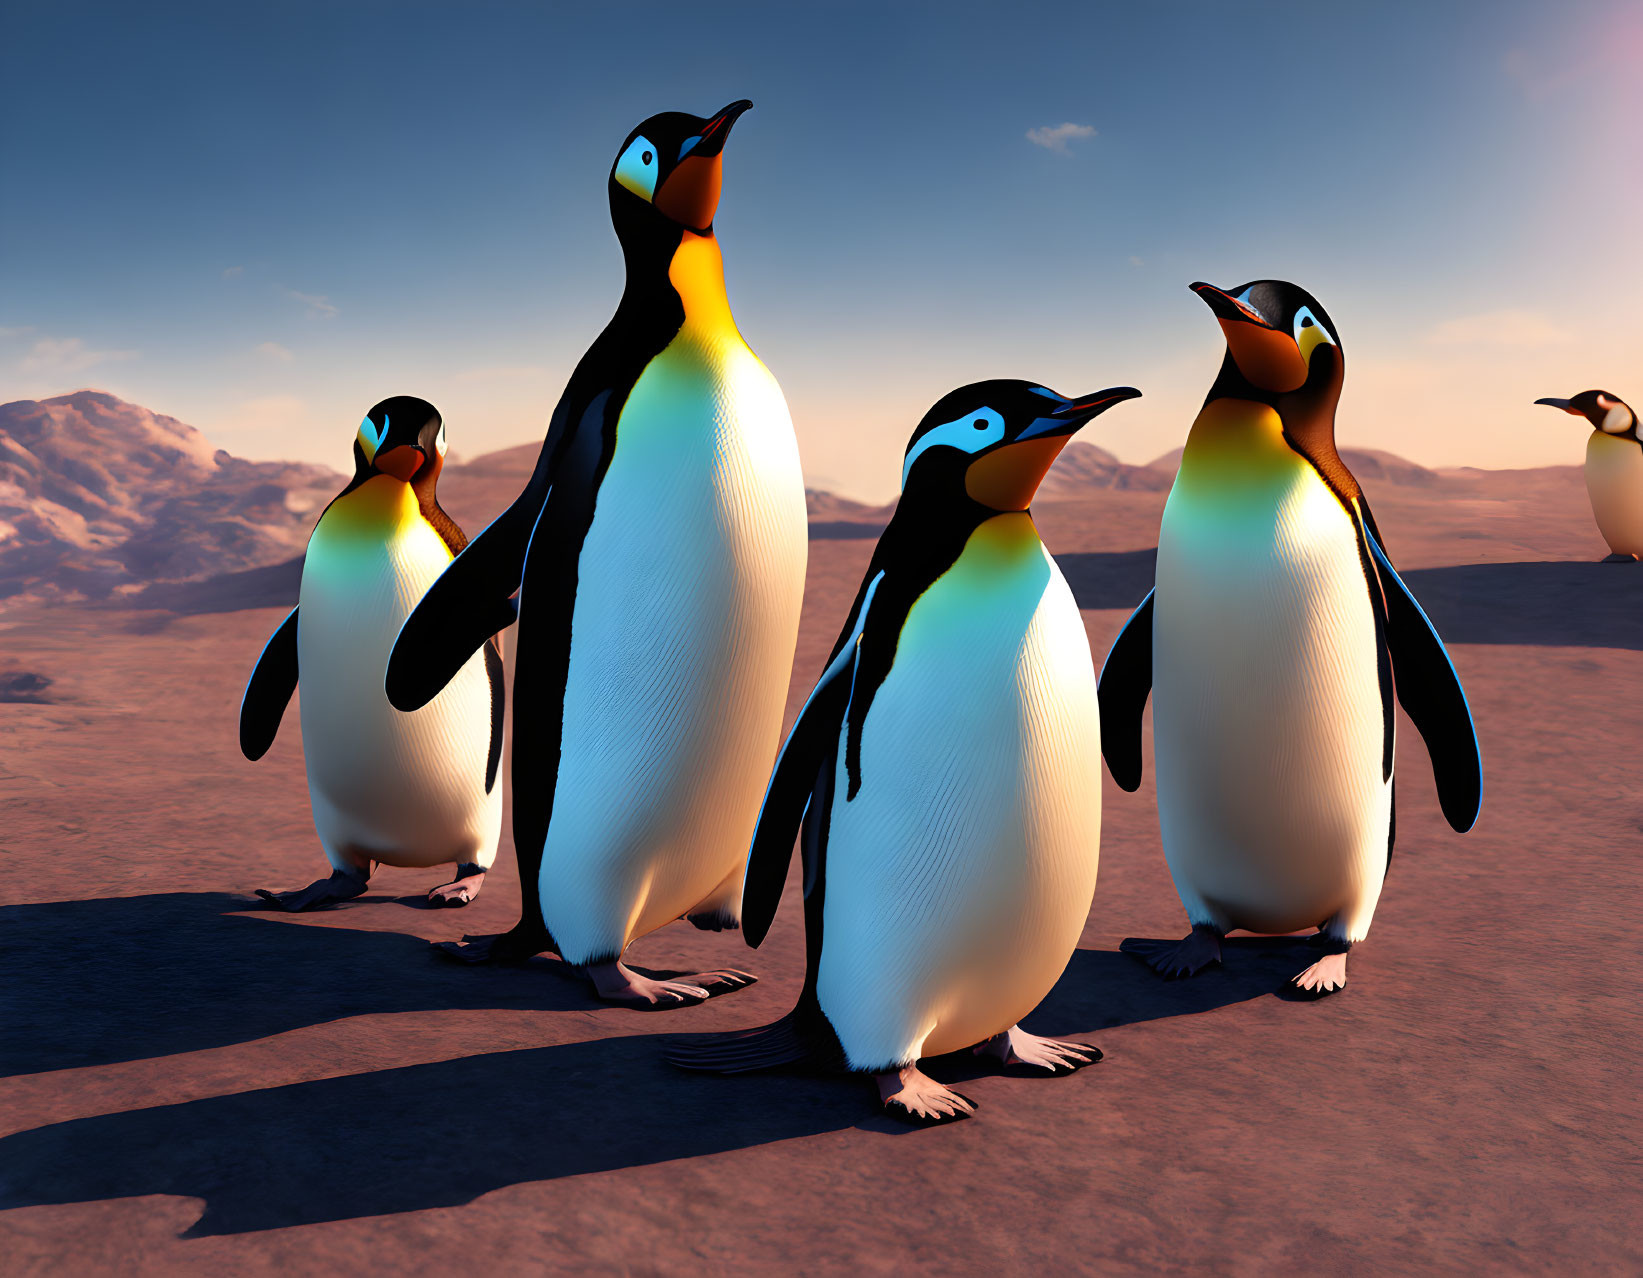 Penguins in a Desert